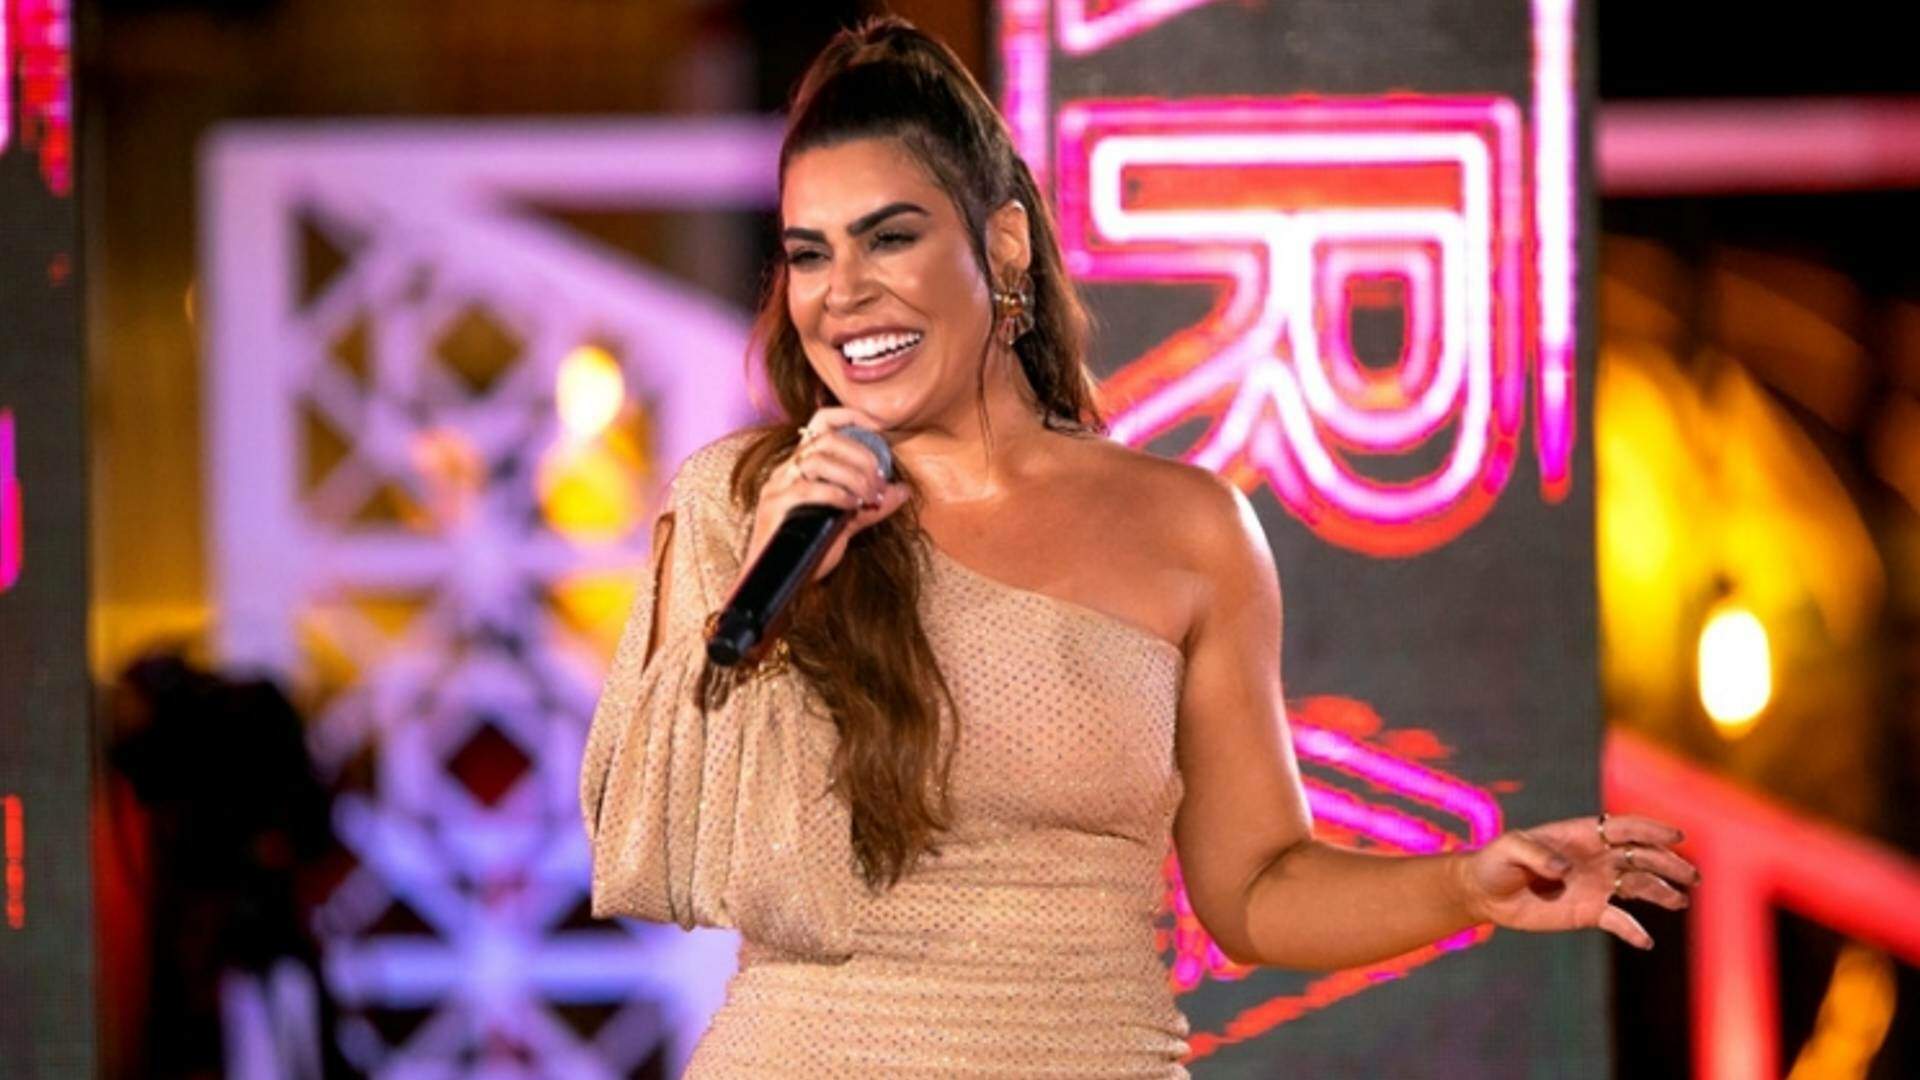 Após polêmica em dueto com Marília Mendonça, Naiara Azevedo lança sua nova música durante participação no BBB22 - Metropolitana FM